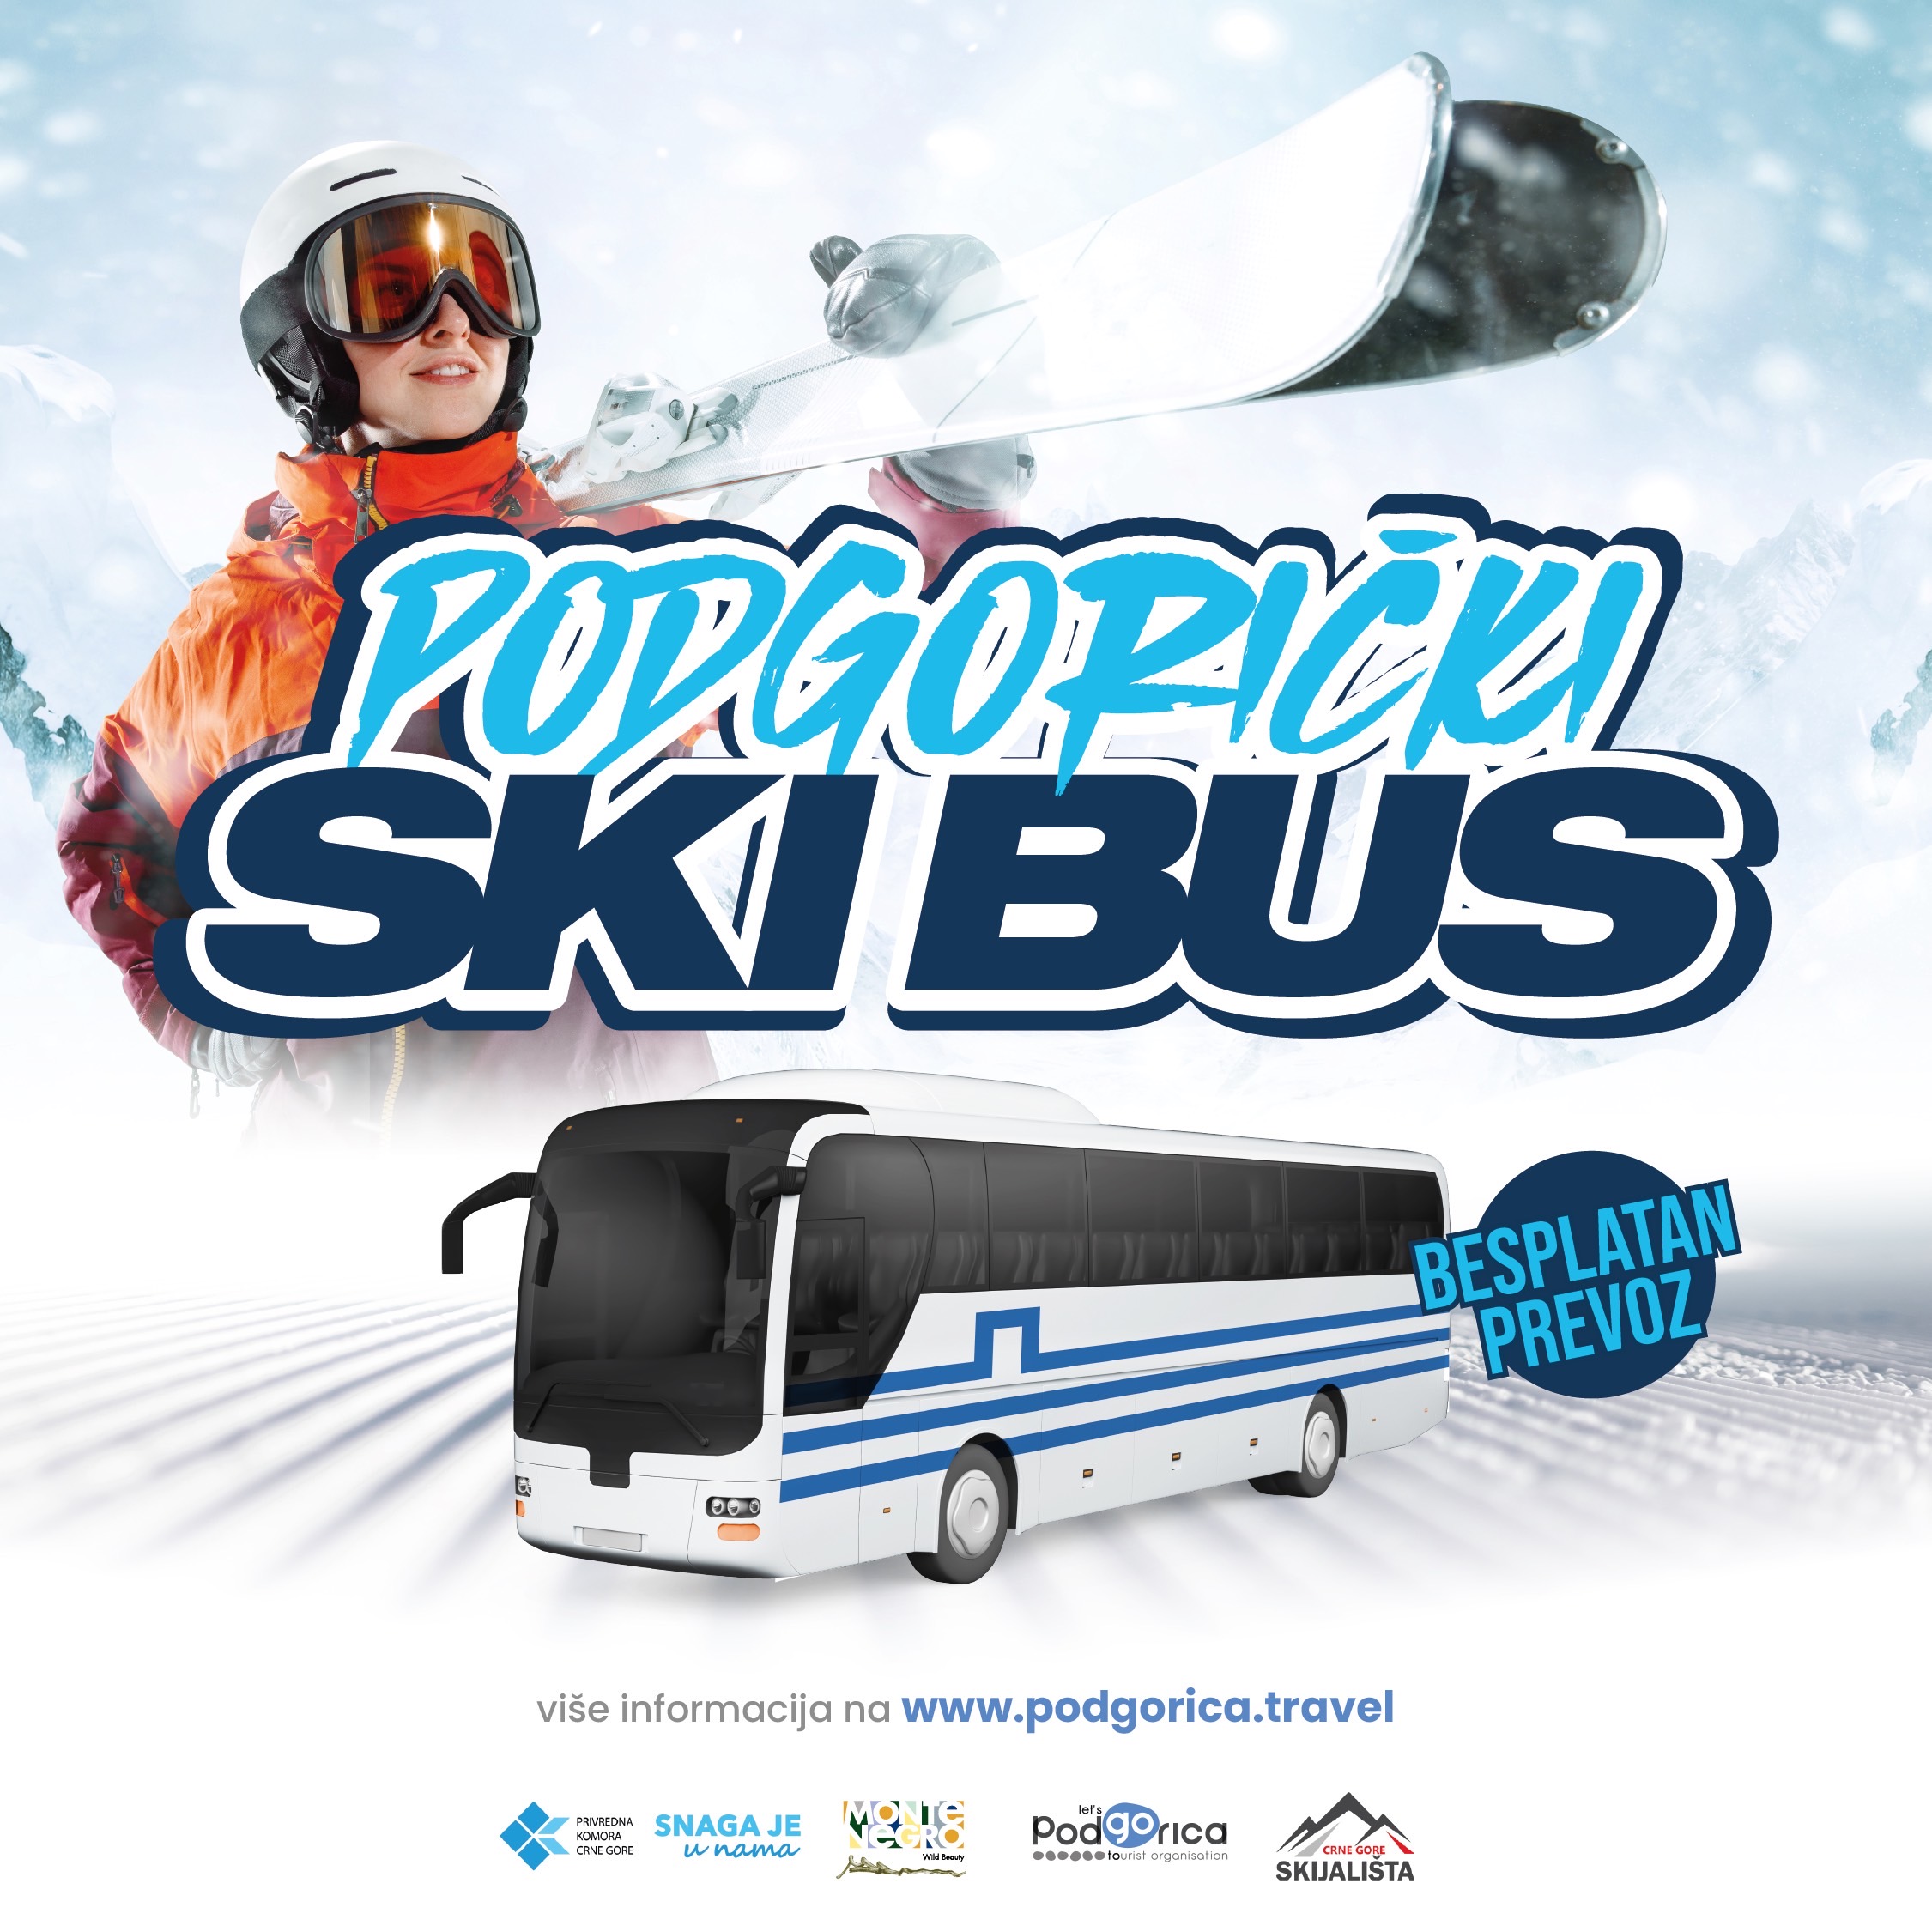 Kreće Podgorički ski bus